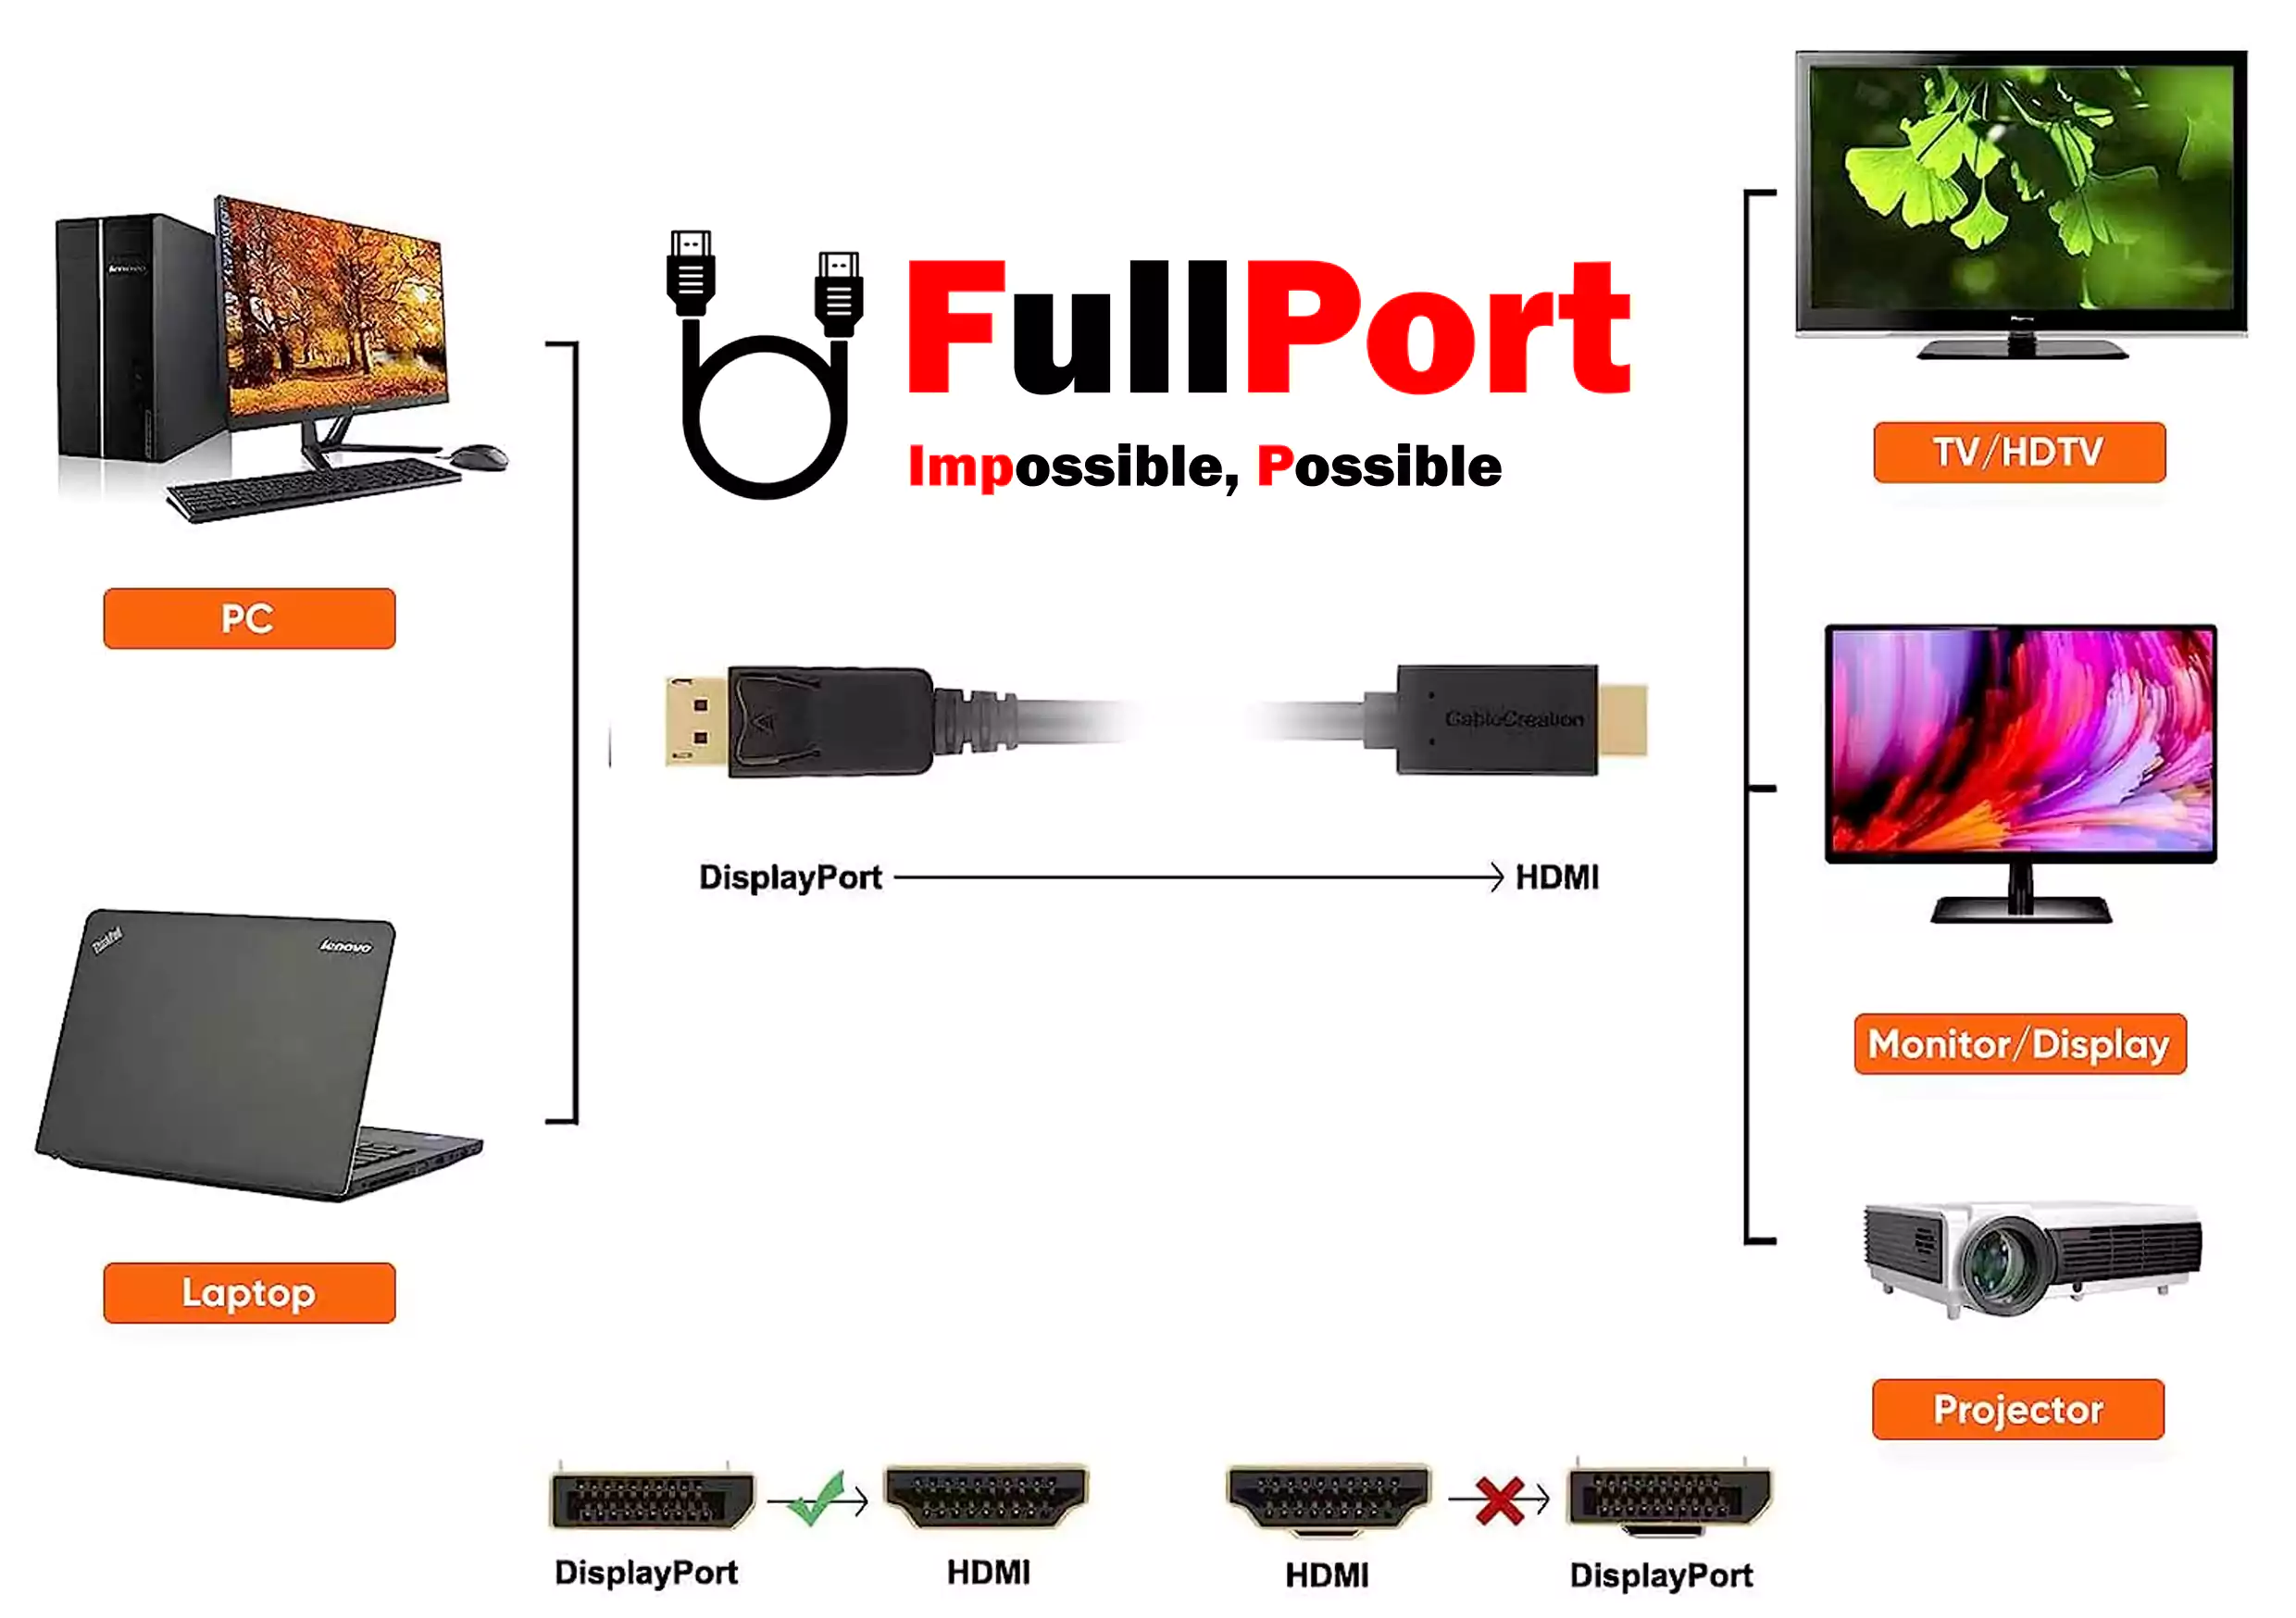 خرید کابل Display به HDMI در متراژهای مختلف از فروشگاه اینترنتی فول پورت